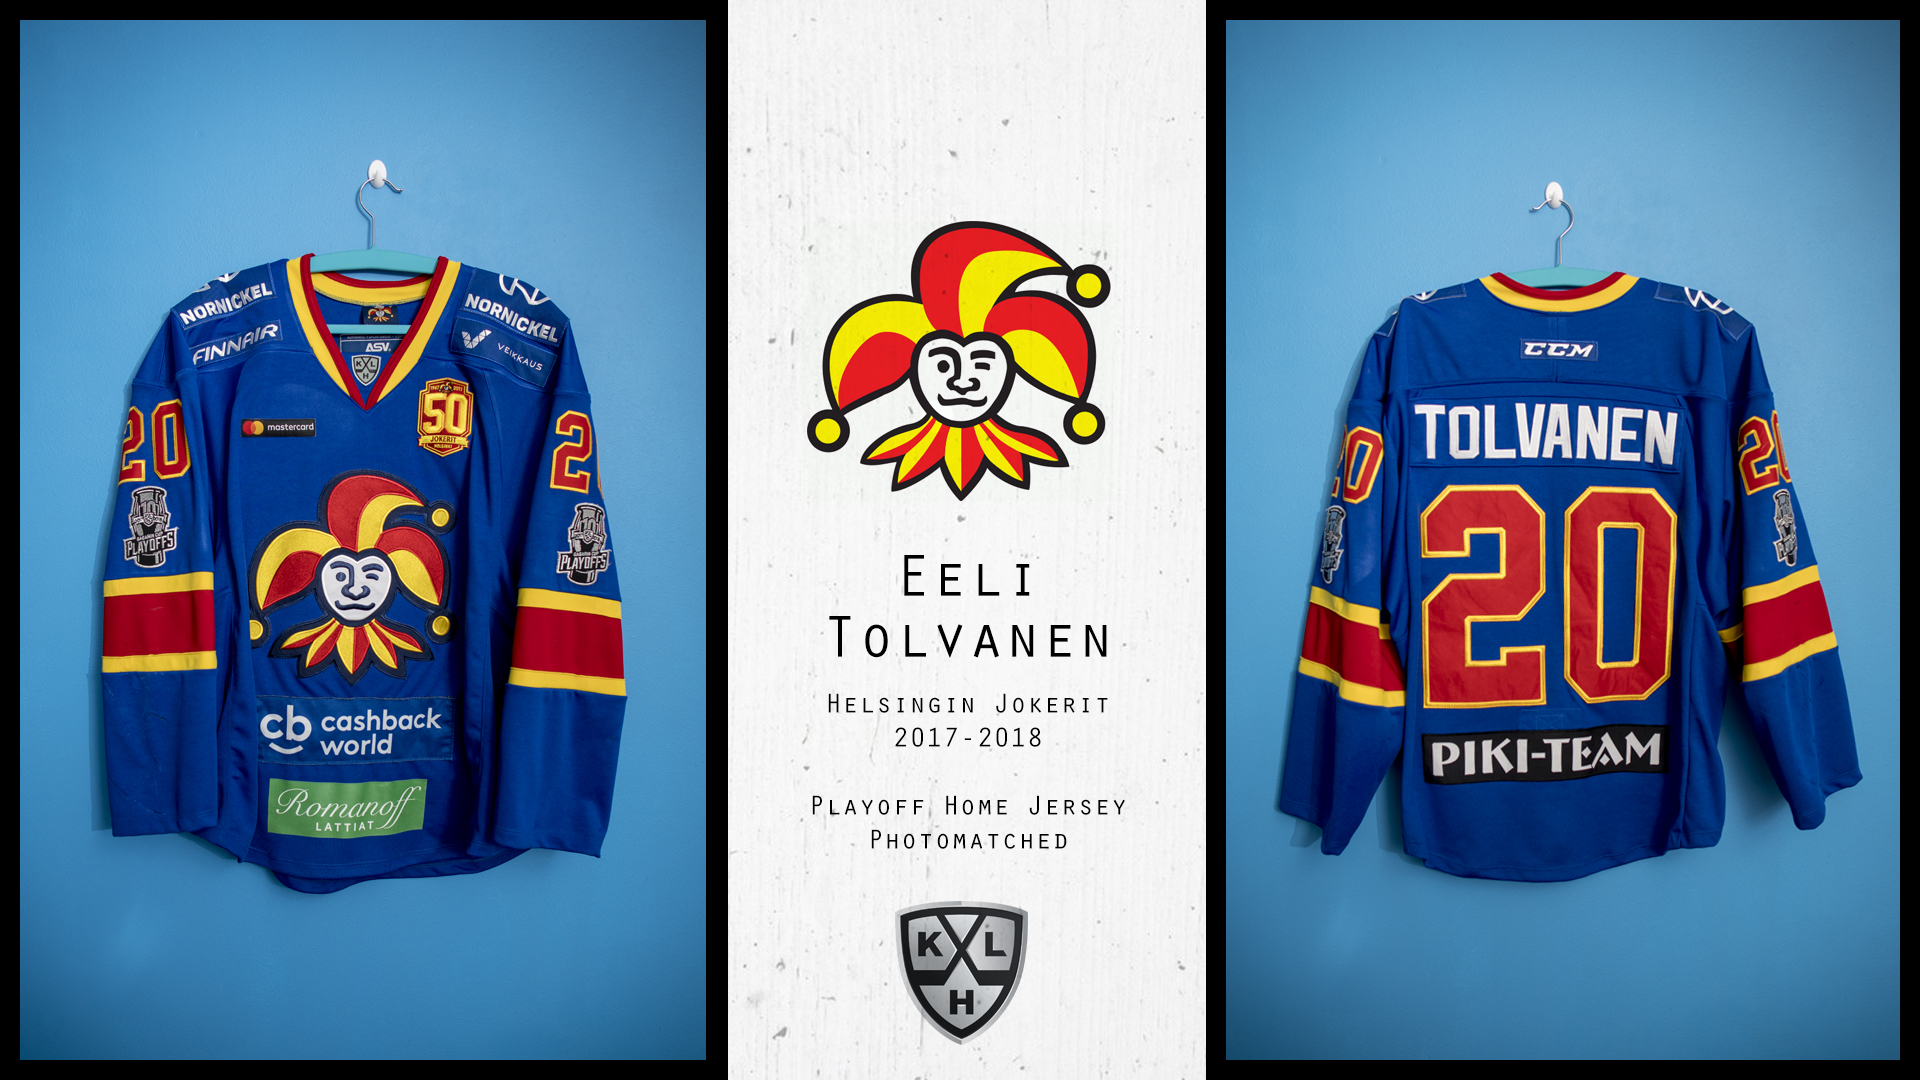 Eeli Tolvanen, 17-18 Jokerit Playoffs 